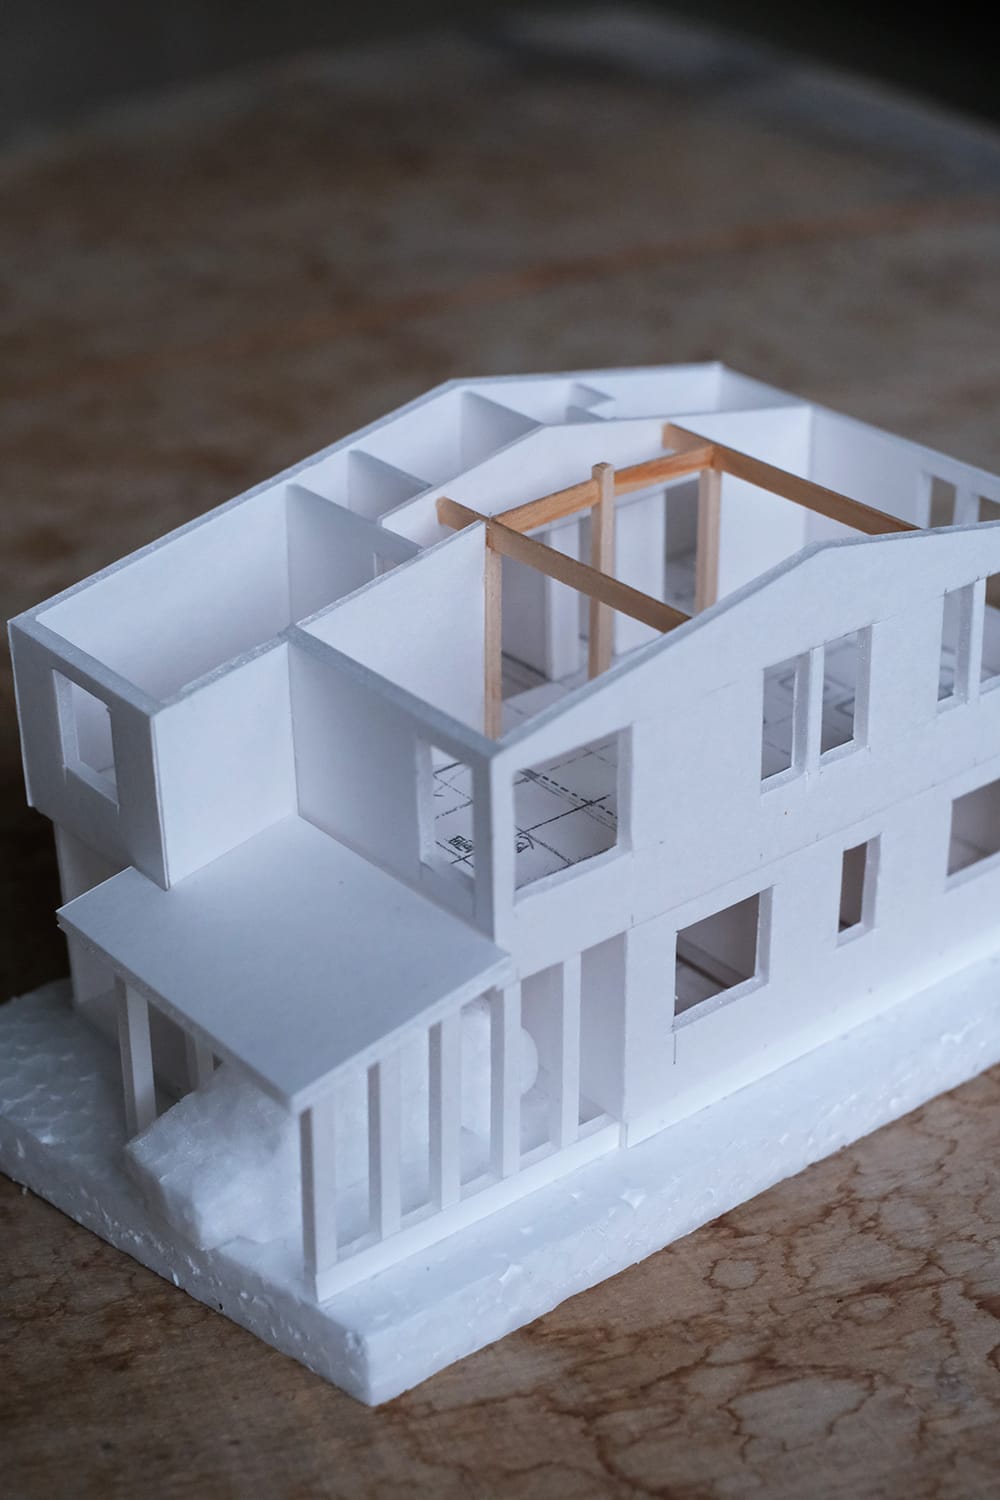 スチレンボードで作った縮尺1/100の住宅模型の2階屋根を取り外して見る